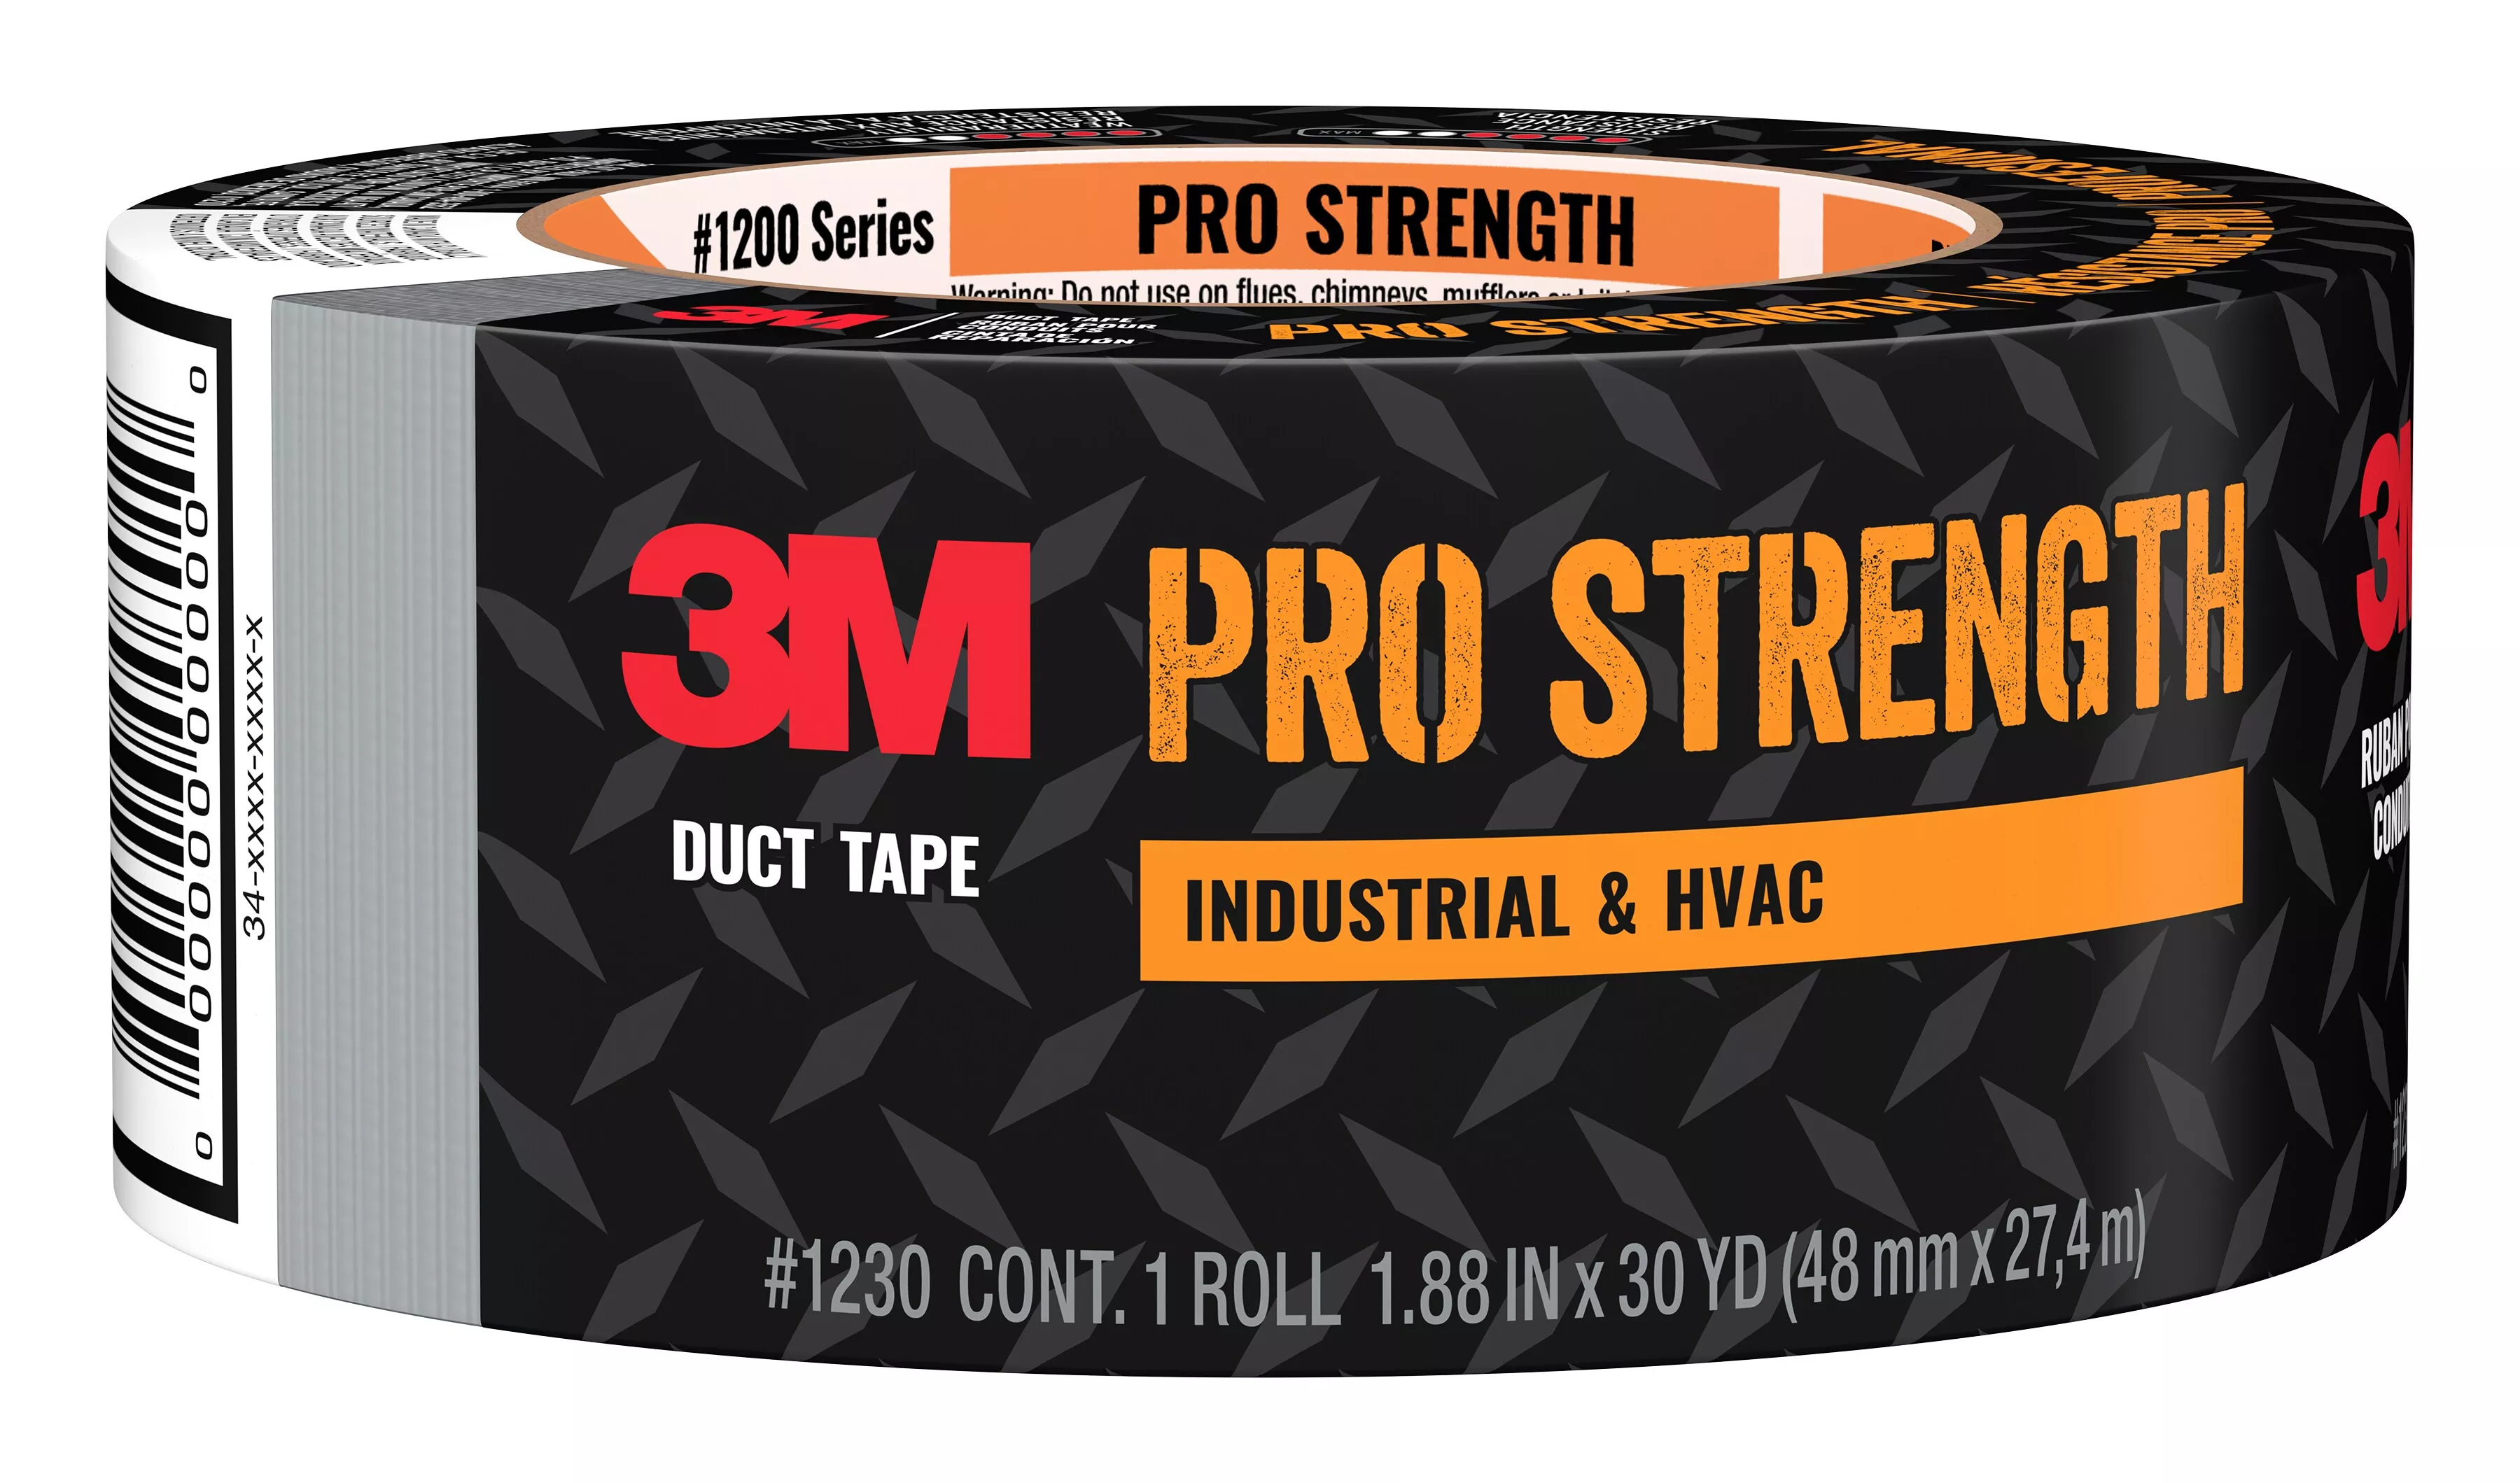 SKU 7100257872 | 3M™ Pro Strength Duct Tape 1230-C 1.88 in x 30 yd (48 mm x 27.4 m) 9 rls/cs